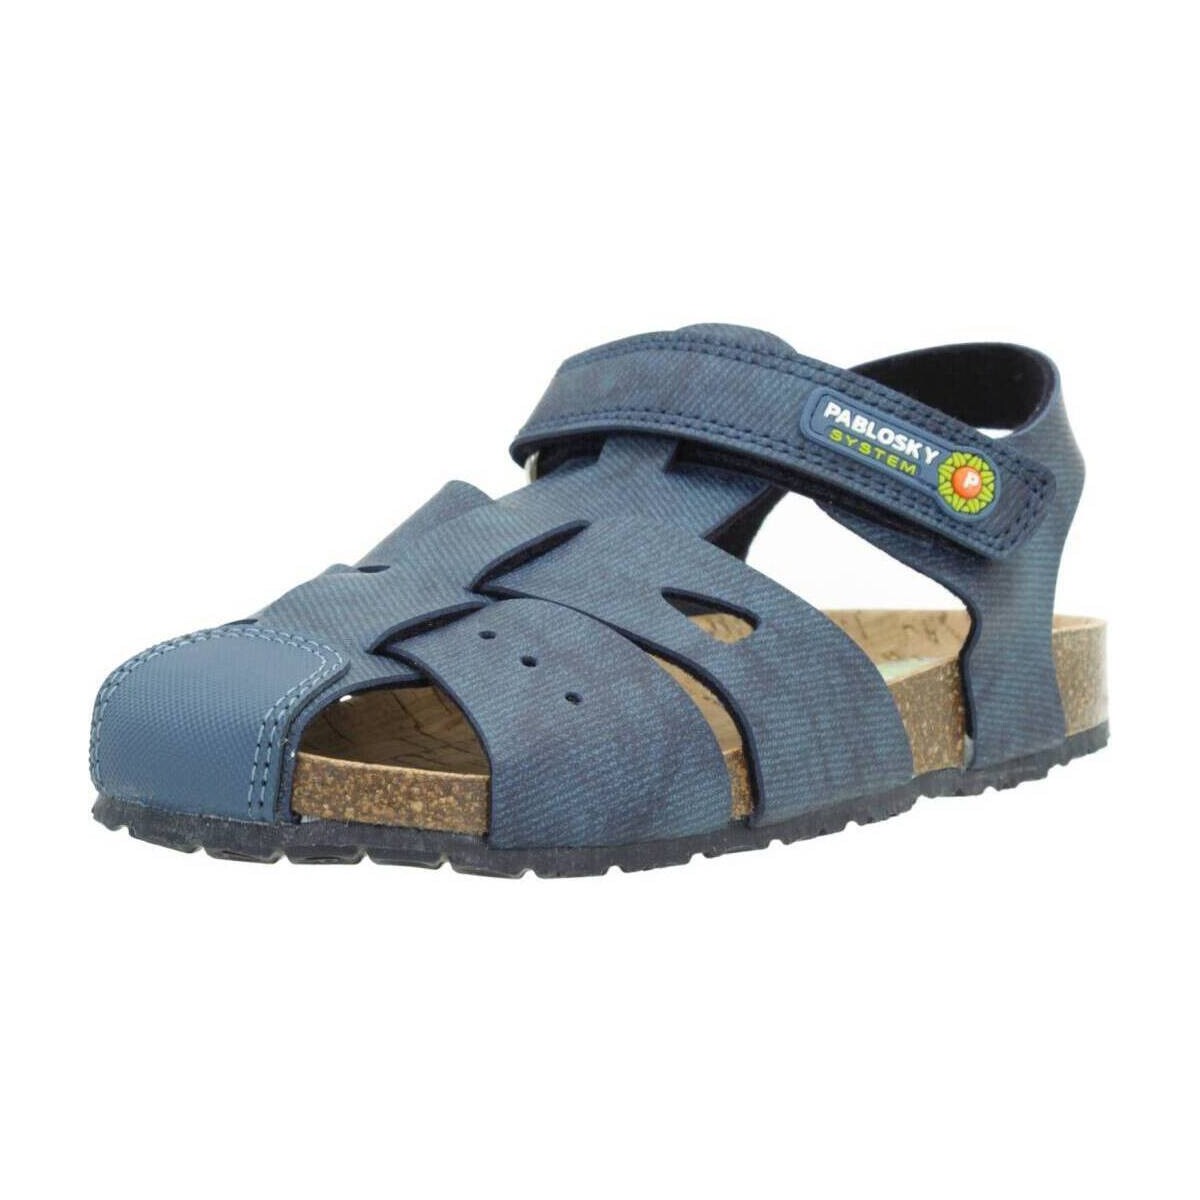 Schuhe Jungen Sandalen / Sandaletten Pablosky 509020P Blau